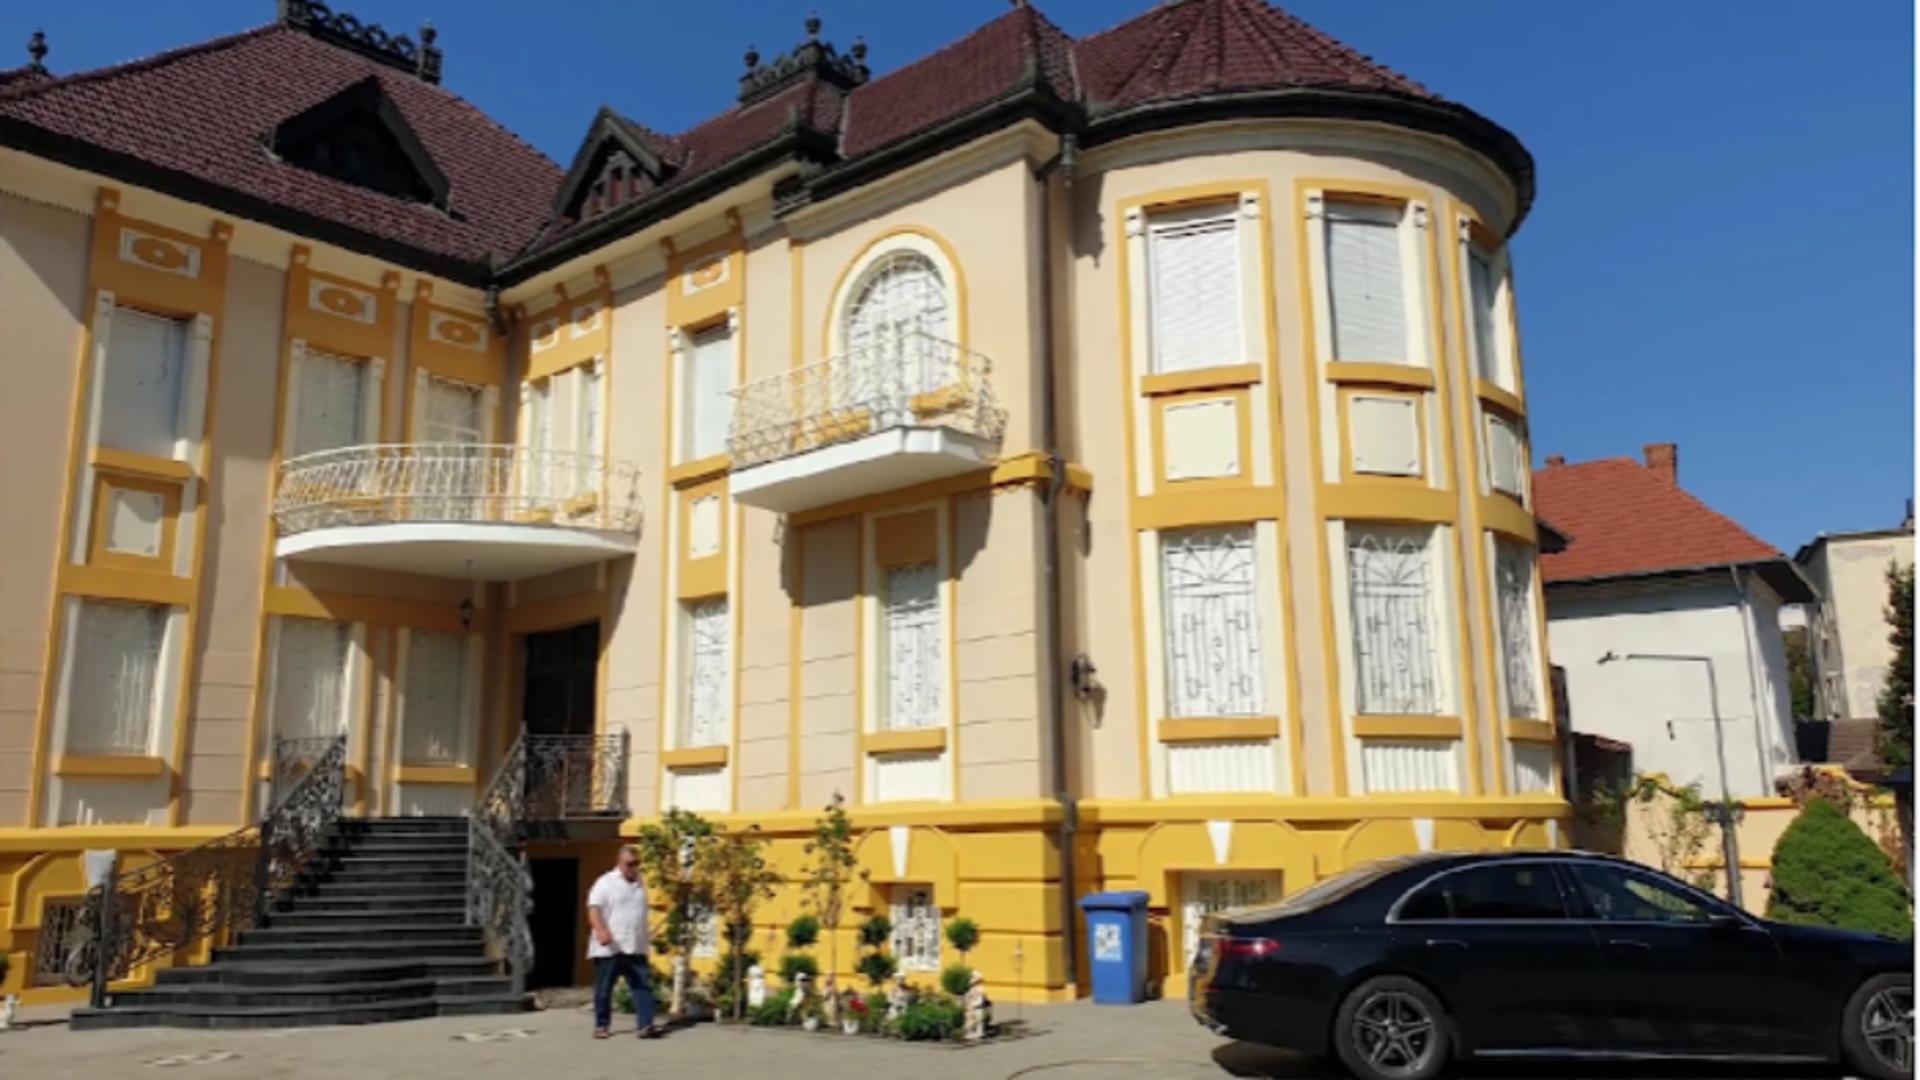 Palat cu uși blindate și mobilier aurit, recuperat de la interlopi, la Timișoara – Șeful clanului vrea înapoi banii investiți – Suma e uriașă